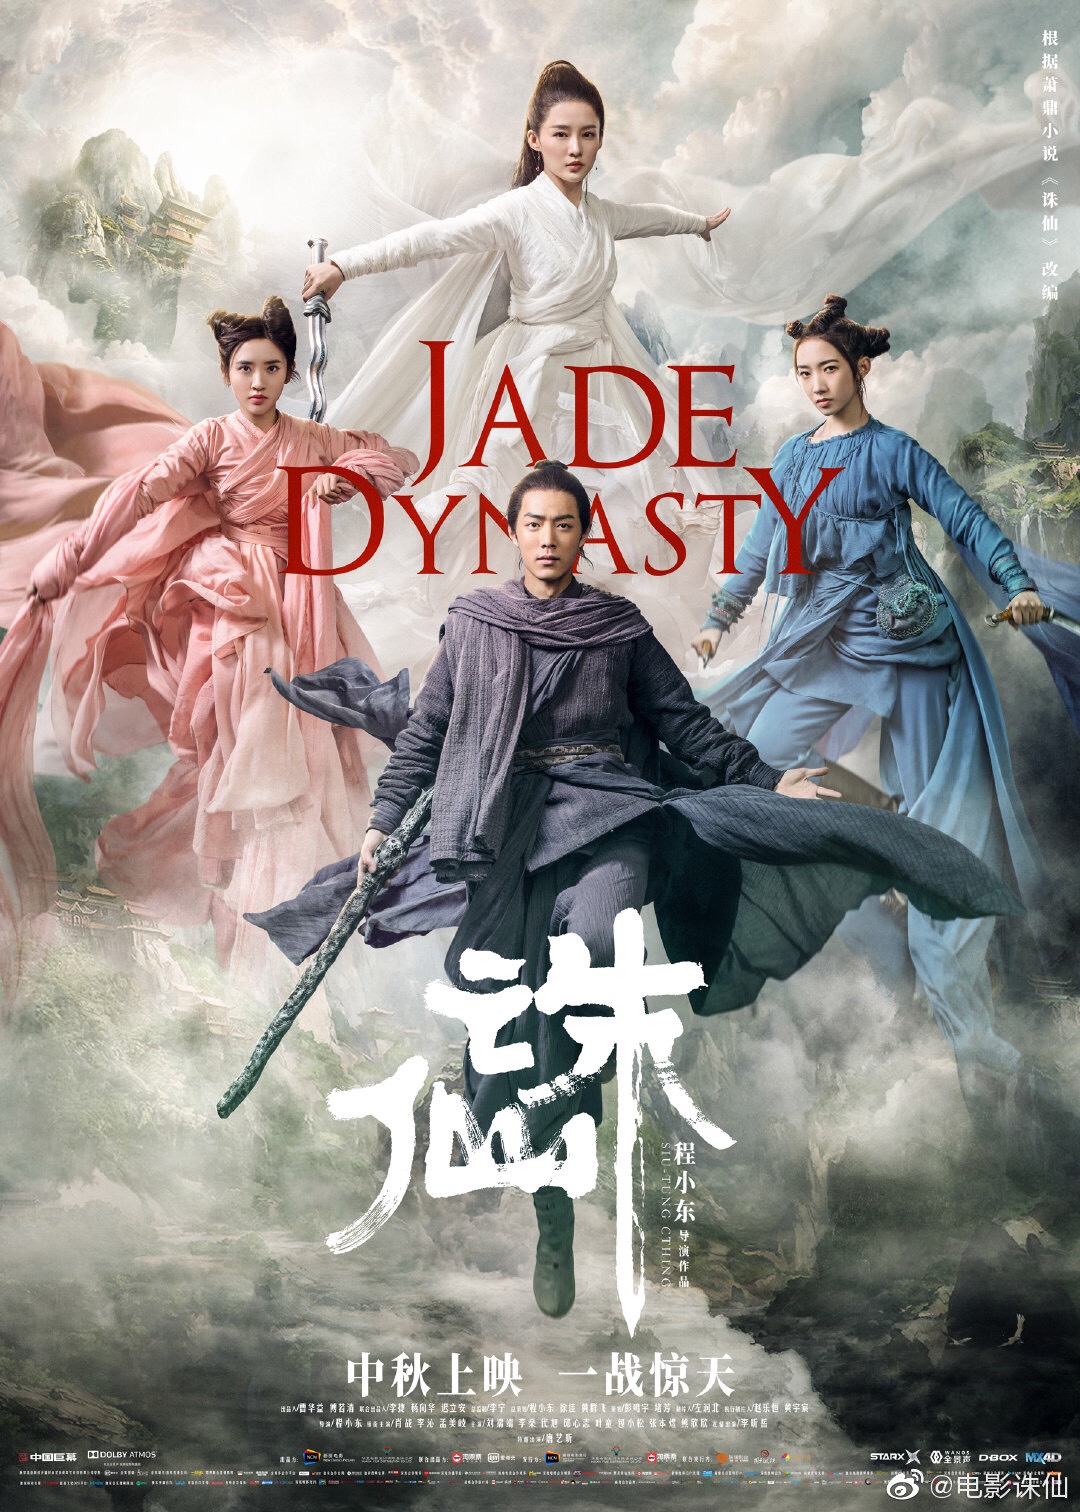 ดูหนังออนไลน์ฟรี Jade Dynasty 2019 กระบี่เทพสังหาร ดูหนังชนโรง